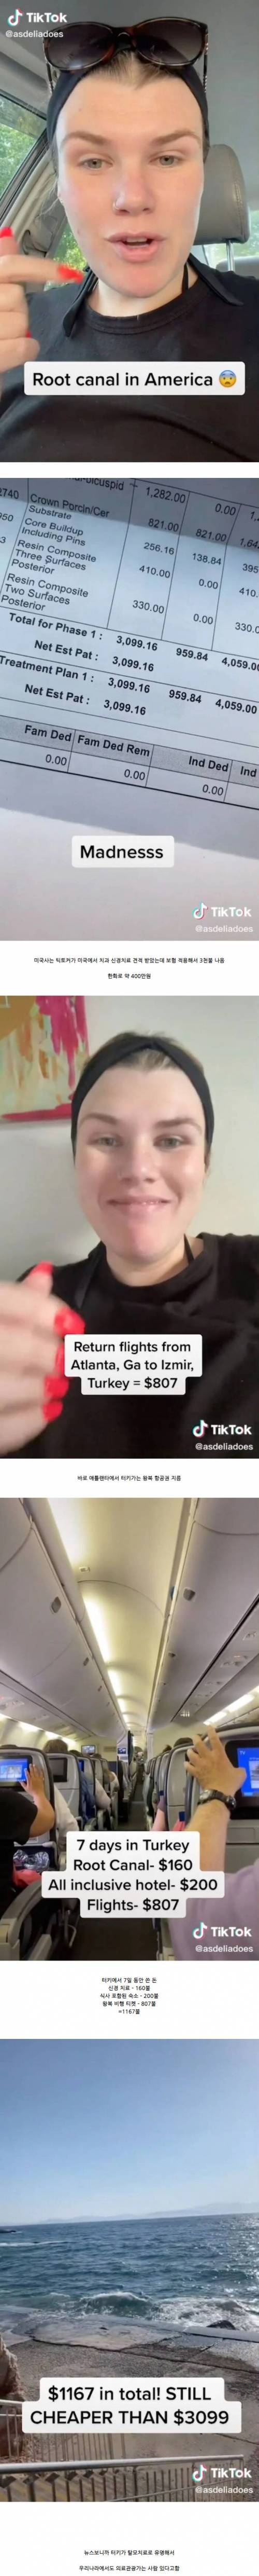 19 치과 신경 치료 견적 보고 터키행 티켓 끊은 미국인.jpg